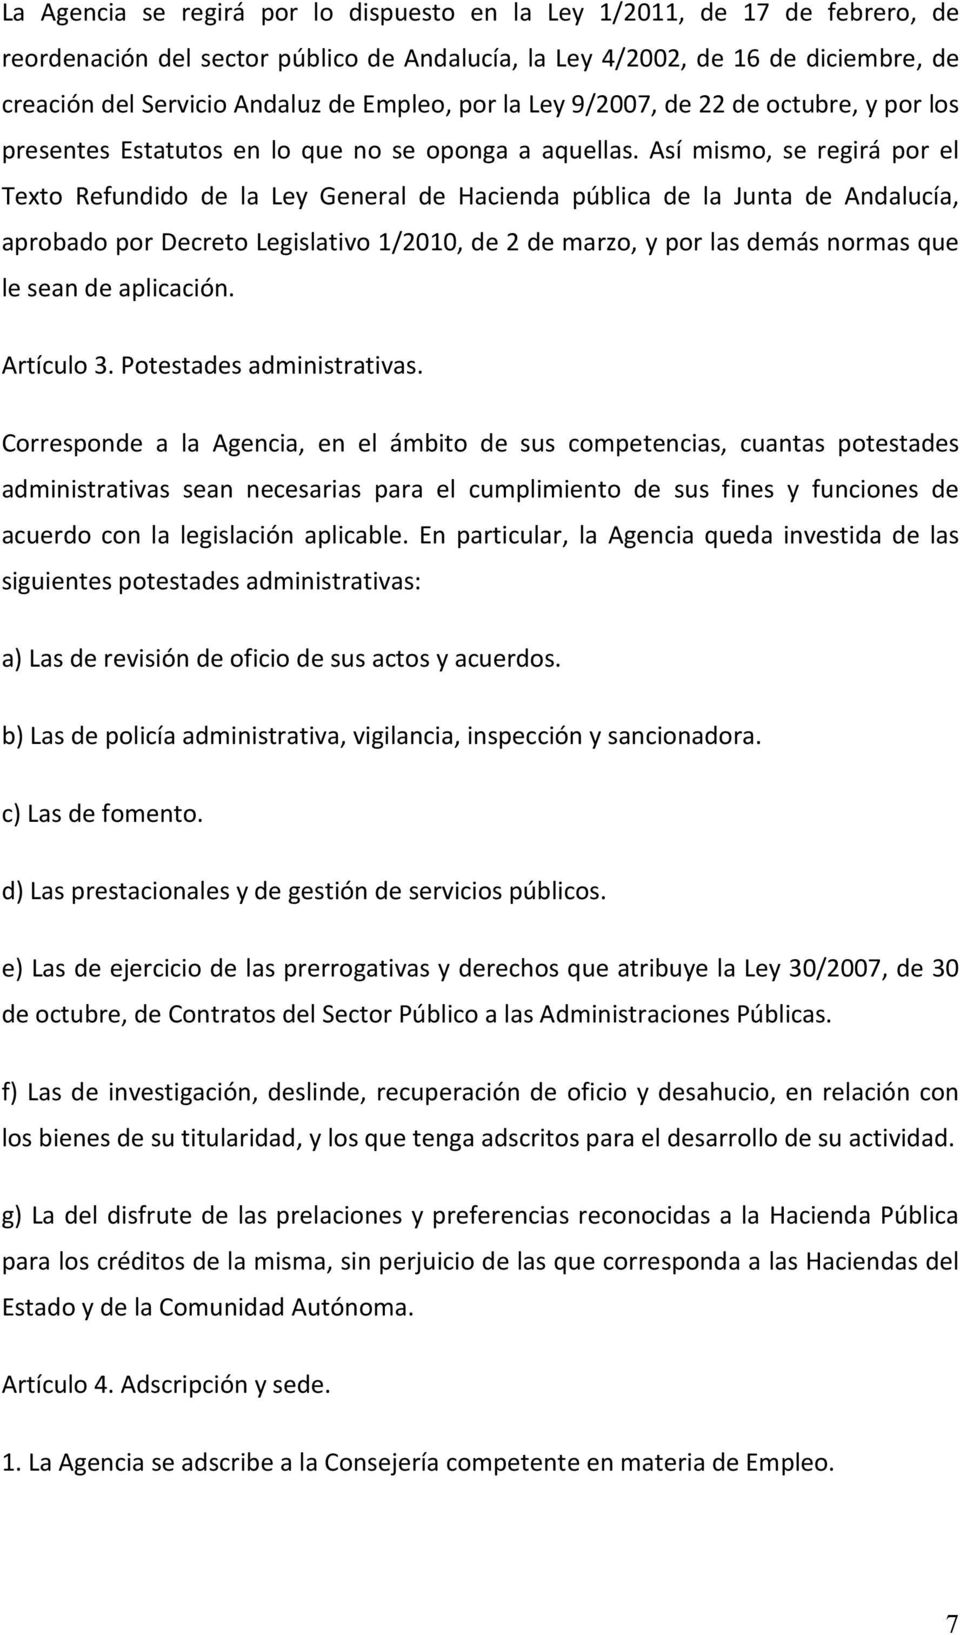 Así mismo, se regirá por el Texto Refundido de la Ley General de Hacienda pública de la Junta de Andalucía, aprobado por Decreto Legislativo 1/2010, de 2 de marzo, y por las demás normas que le sean